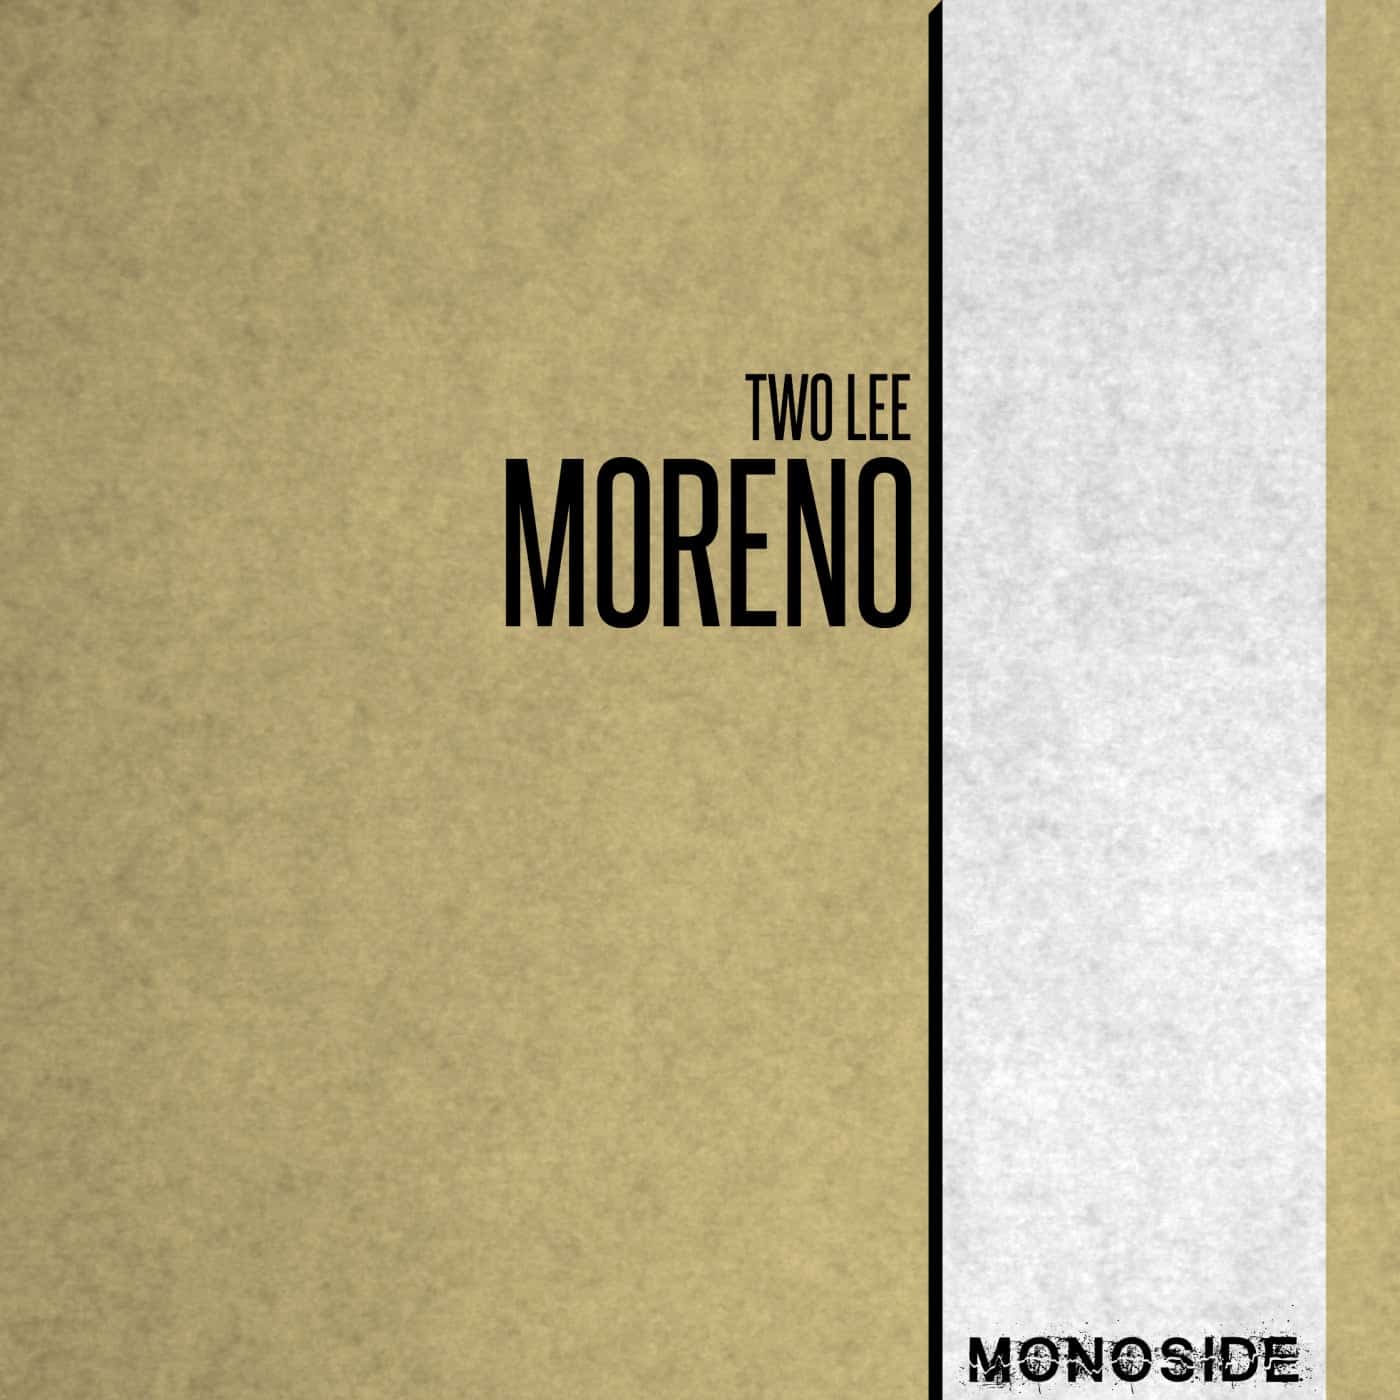 Download Moreno on Electrobuzz